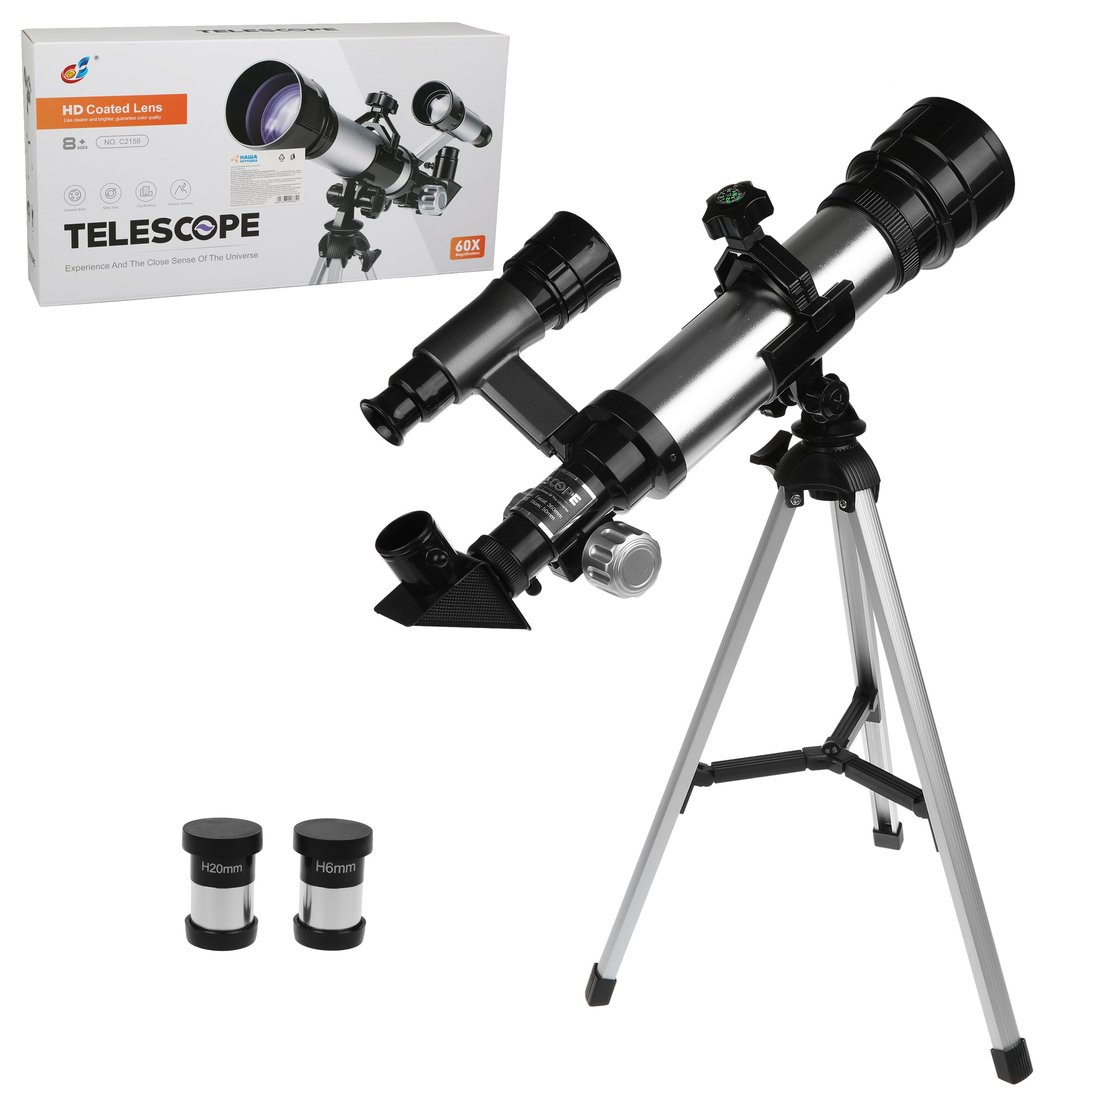 Телескоп детский Наша Игрушка 60х увеличение, 3 объектива арт. 800664 крышка jjc для объектива 95 мм deluxe